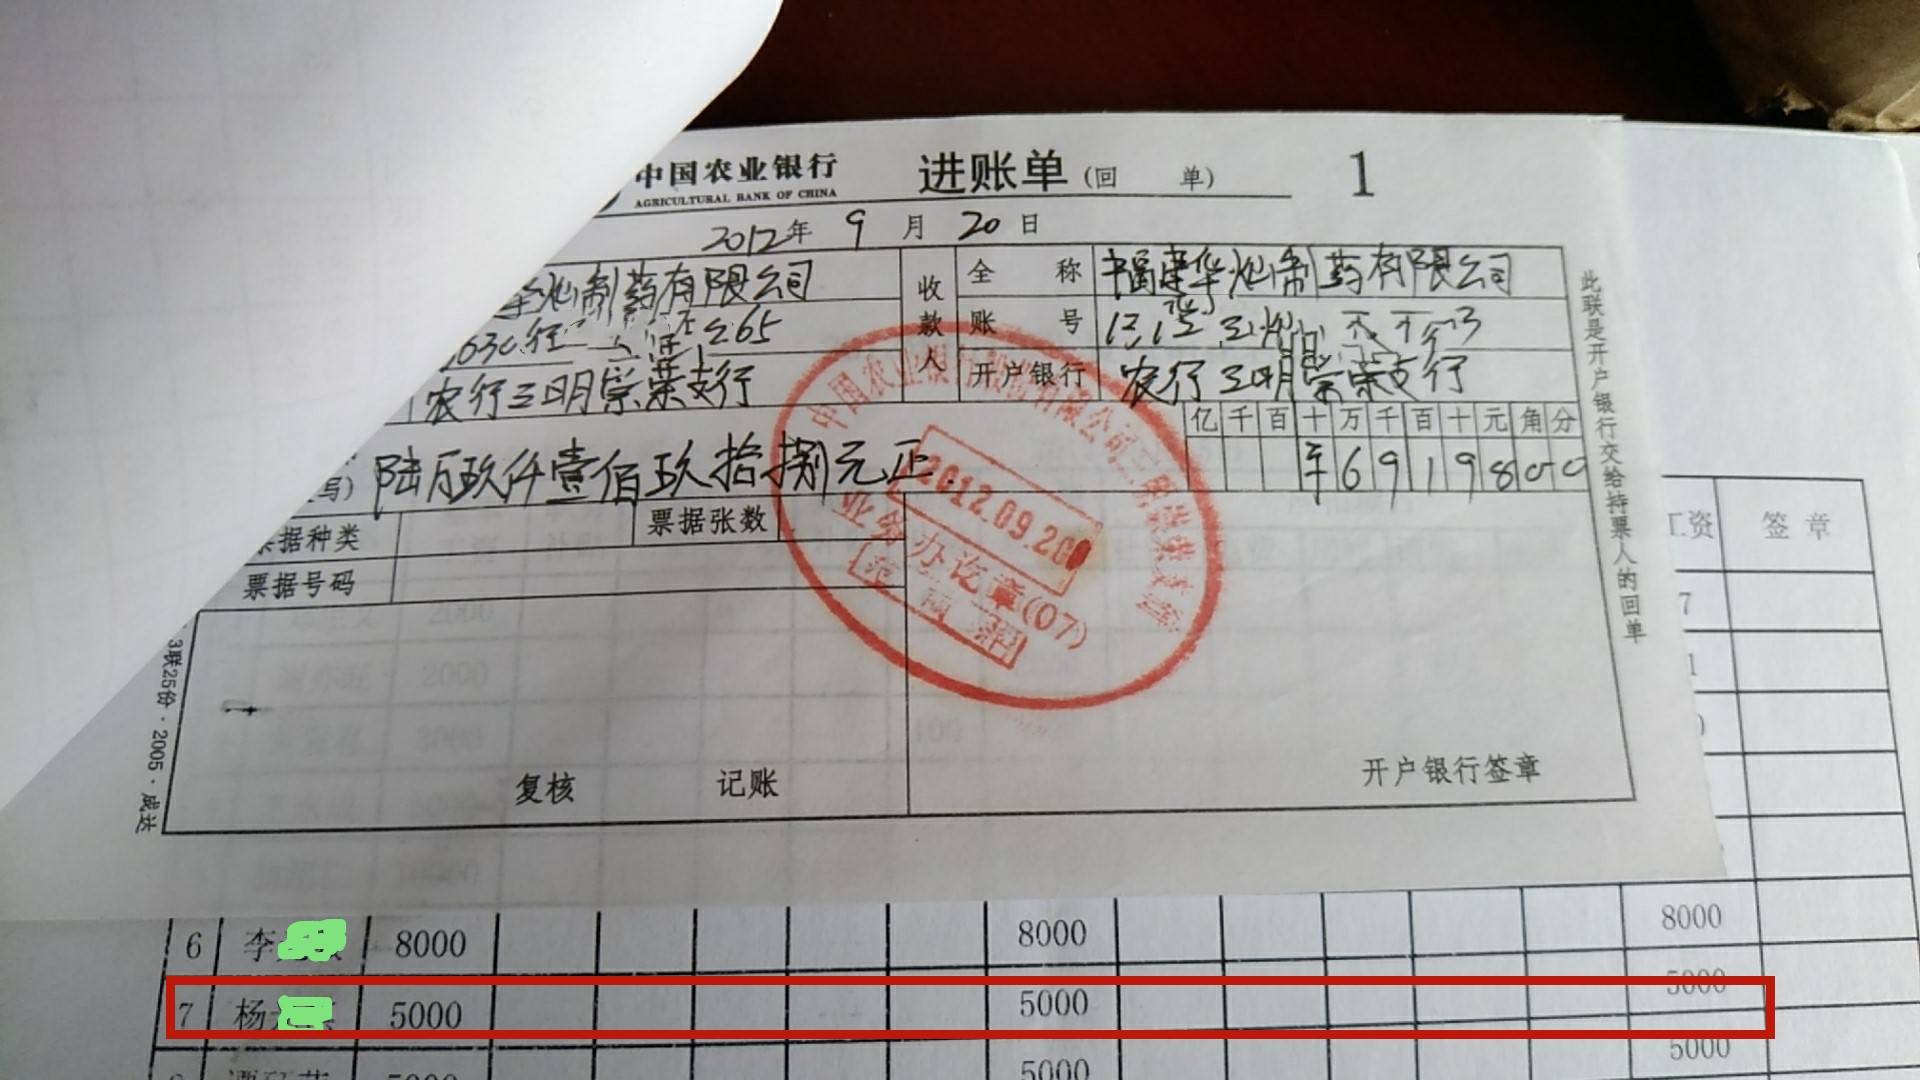 华灿公司2012年9月转账凭证显示,杨某某工资5000元.